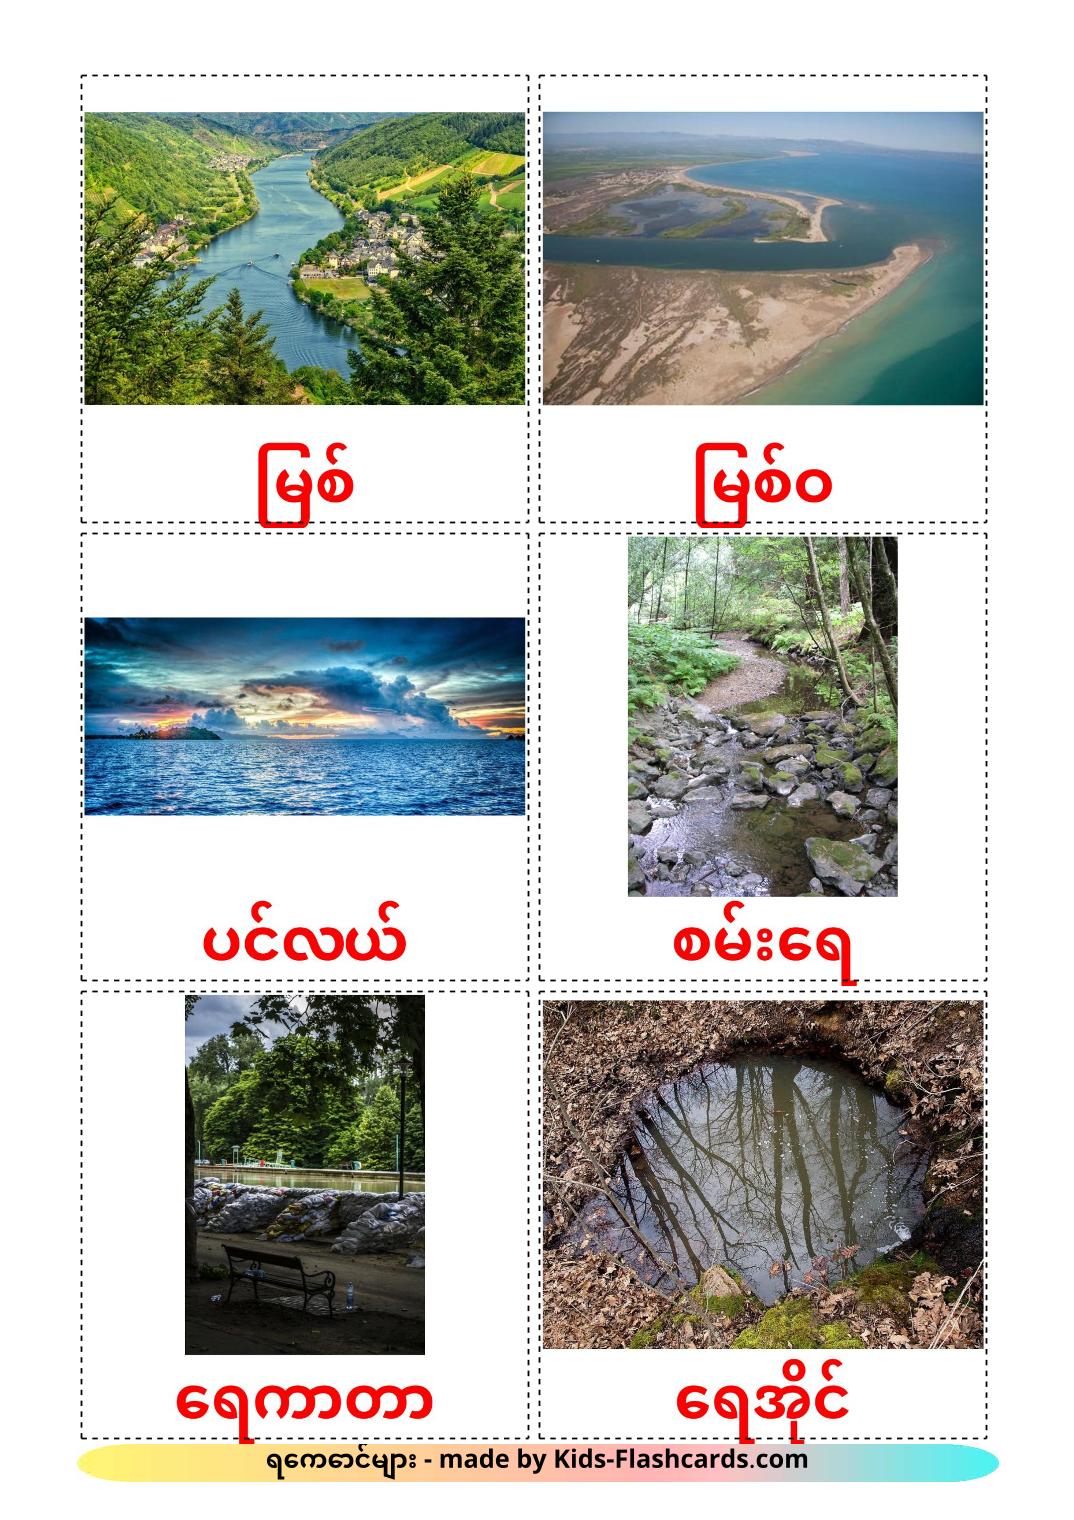 Cuerpos de agua - 30 fichas de birmano para imprimir gratis 